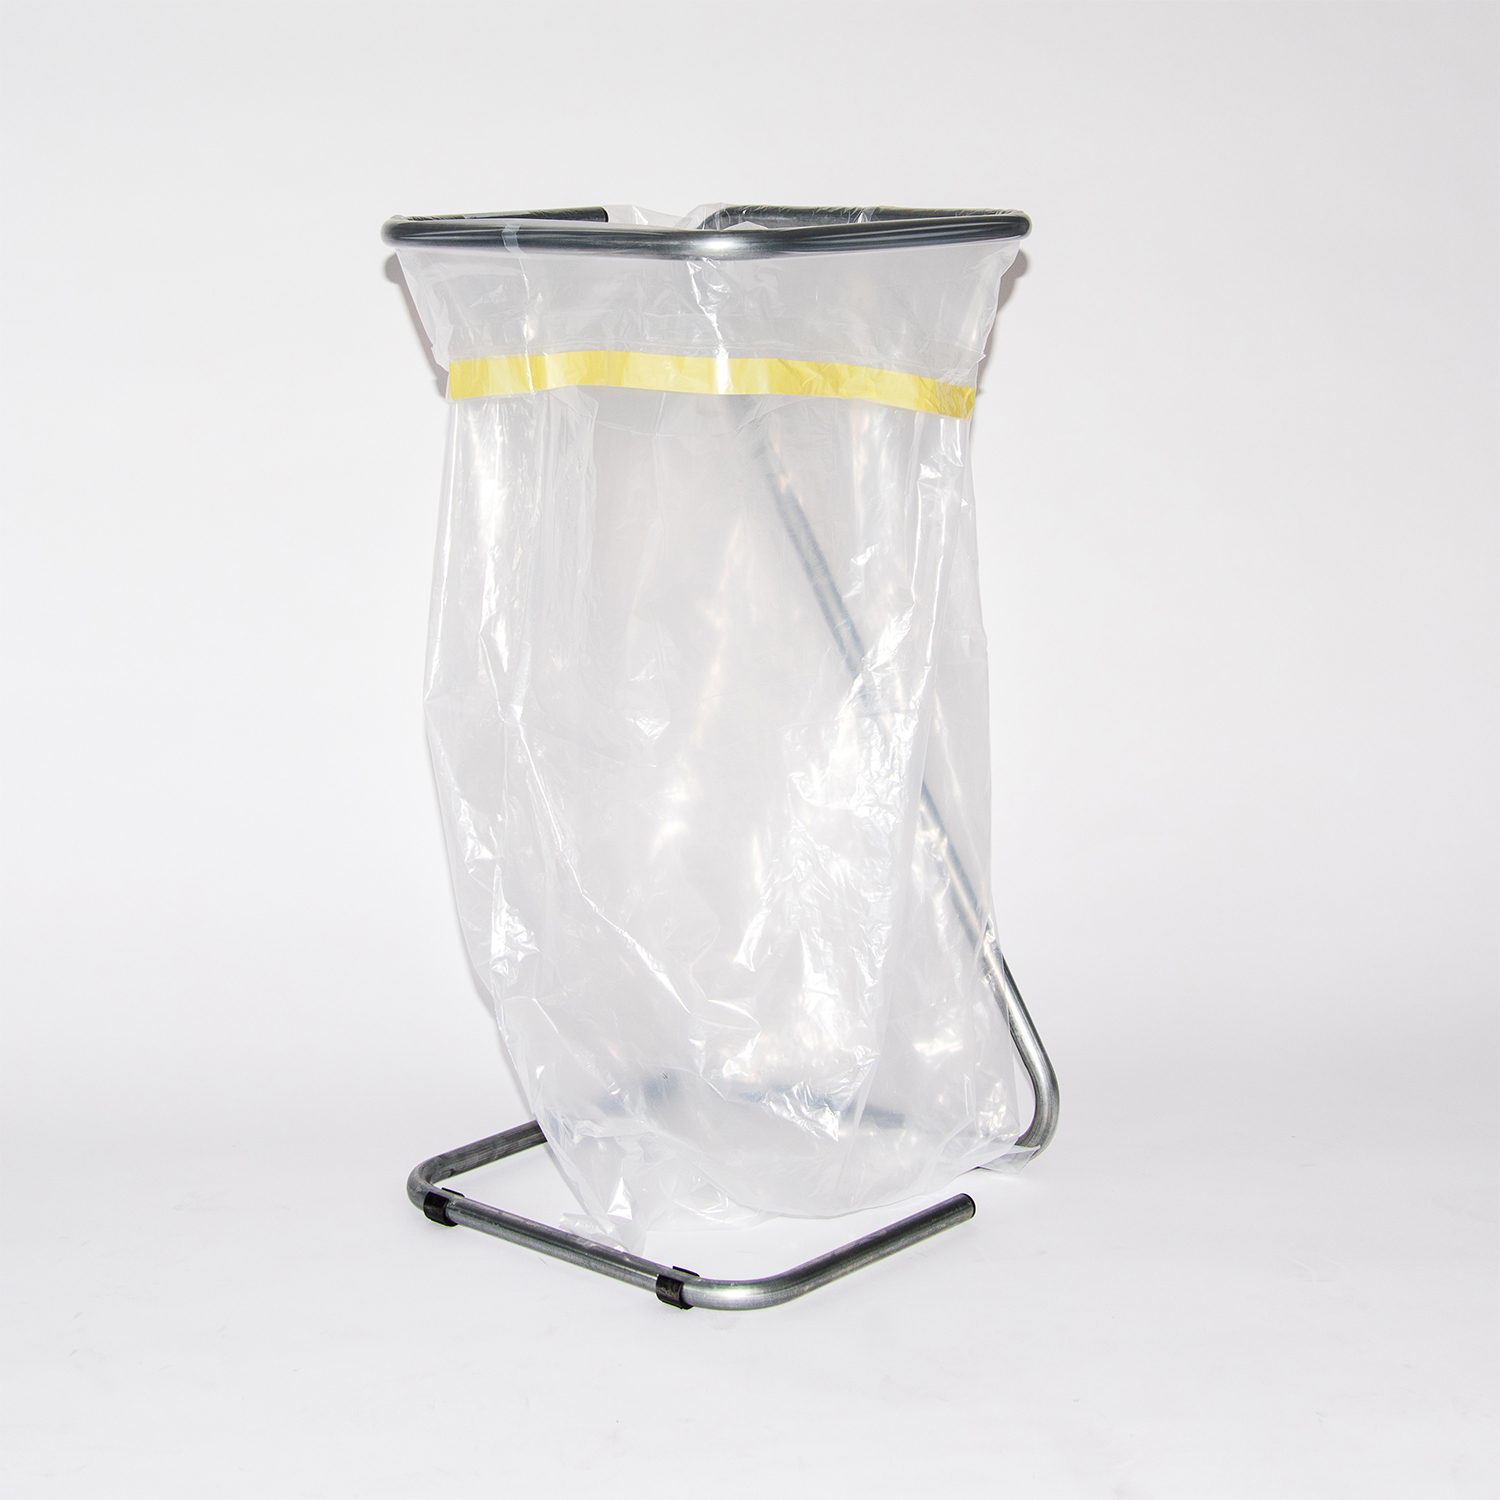 Sacs 110 litres Sacs à déchets plastiques 110 l. Voulez-vous collecter les déchets plastiques à la maison ou au bureau ? Alors le Knapzak 110 litres est fait pour vous ! Combiné avec le support, il prend très peu de place. Le sac poubelle transparent est spécialement conçu pour la collecte des déchets plastiques et est facile à utiliser grâce à ses rubans d'attache. Vous cherchez encore une autre taille de sacs à déchets plastiques ou de sacs à déchets ? Consultez notre gamme complète de sacs (jusqu'à 2500 litres) ici. Nous pouvons personnaliser les sacs non imprimés avec votre propre impression moyennant un supplément.

Regardez le sac poubelle de 110 litres ci-dessous. Si vous souhaitez des conseils personnalisés, veuillez nous contacter.